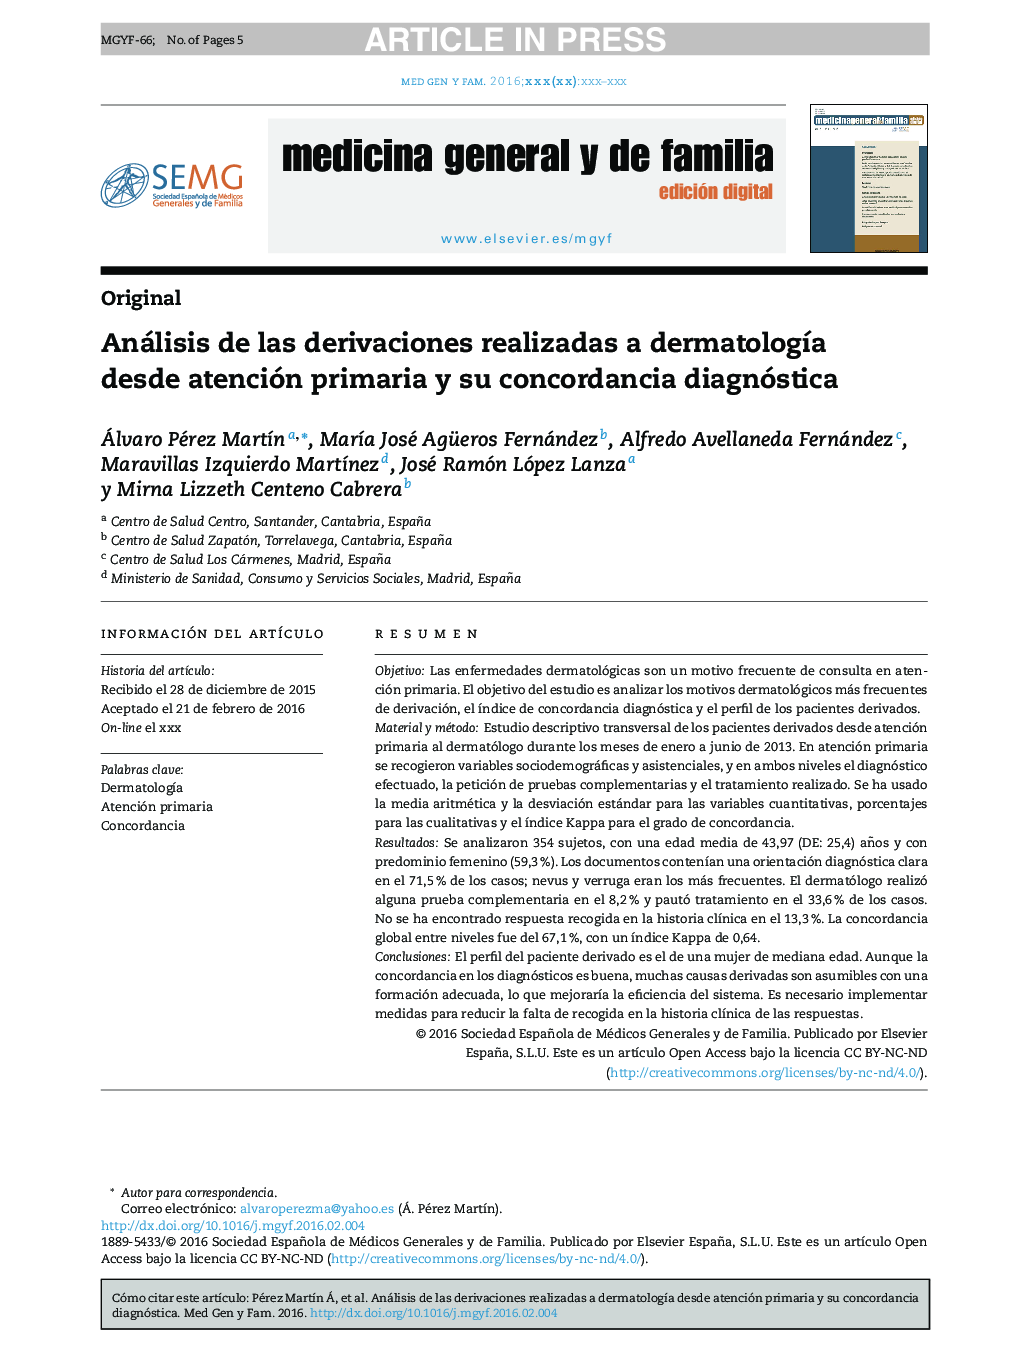 Análisis de las derivaciones realizadas a dermatologÃ­a desde atención primaria y su concordancia diagnóstica